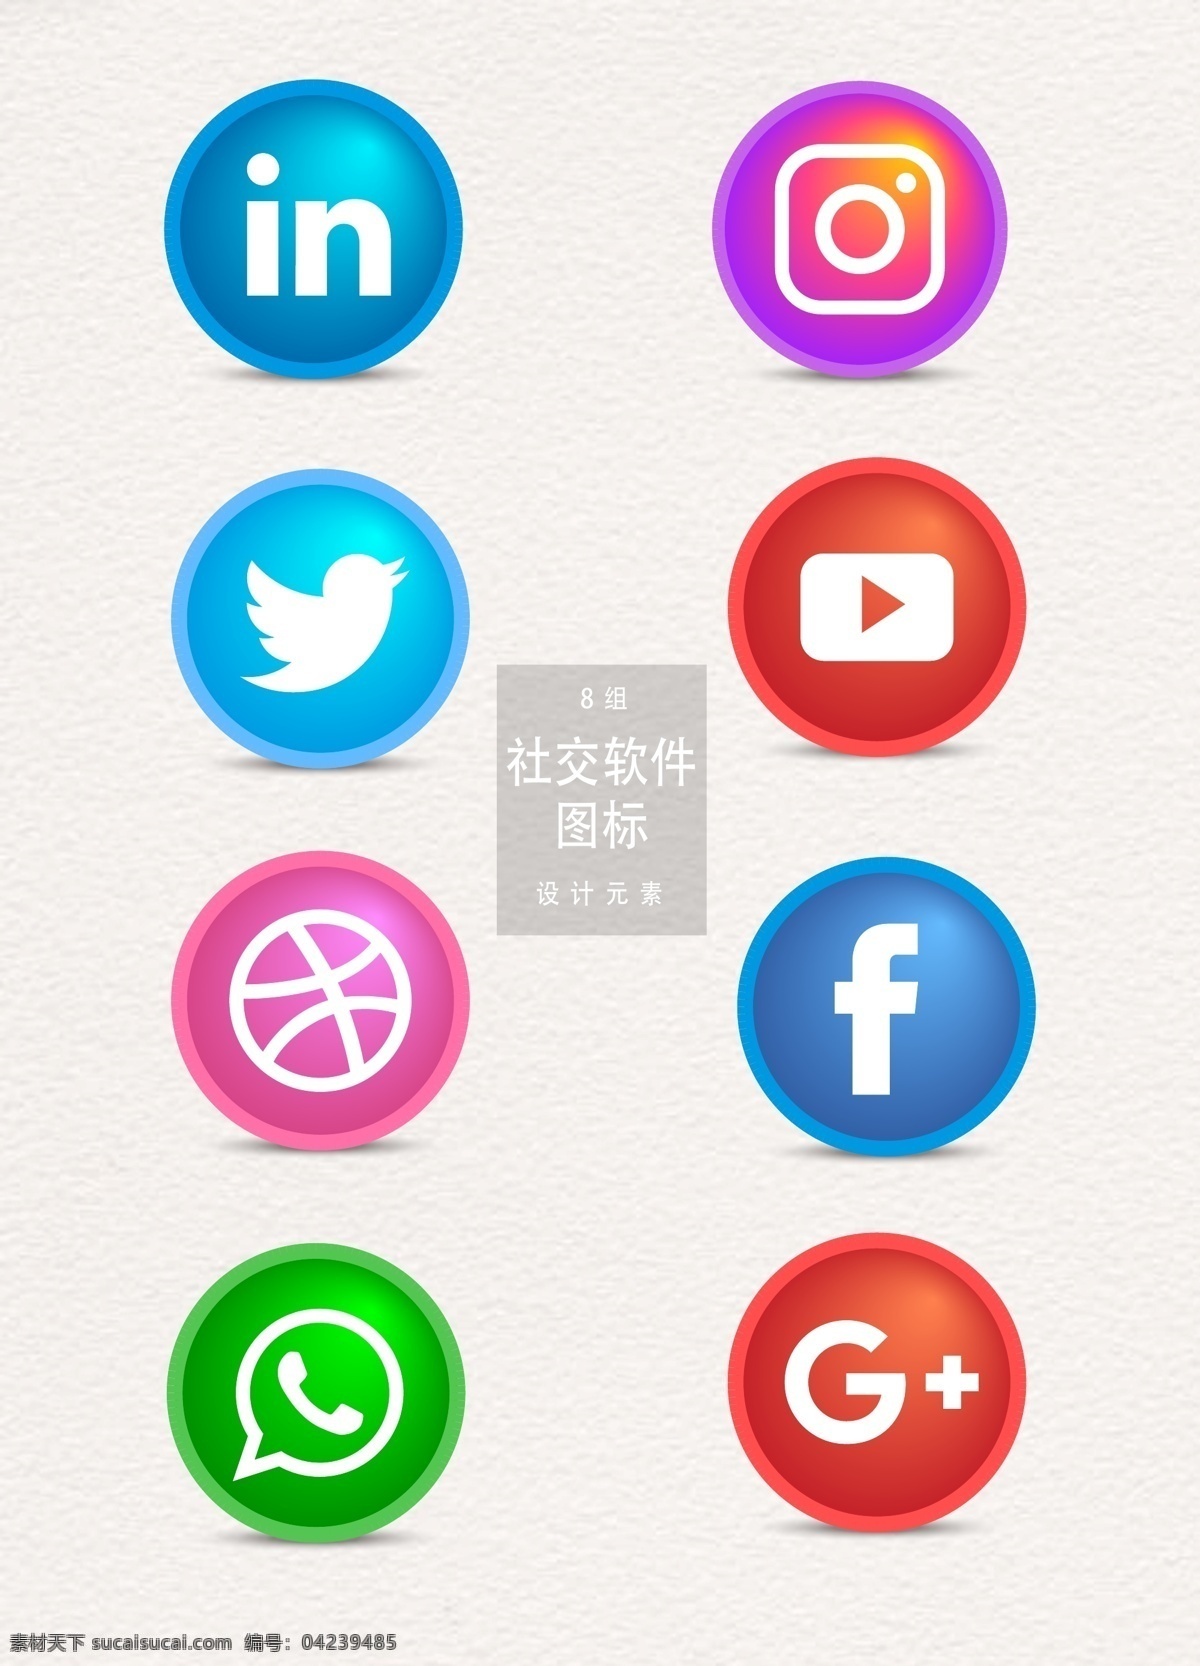 社交 软件 图标 元素 图标设计 软件图标 app图标 app 社交软件图标 社交软件 社交图标